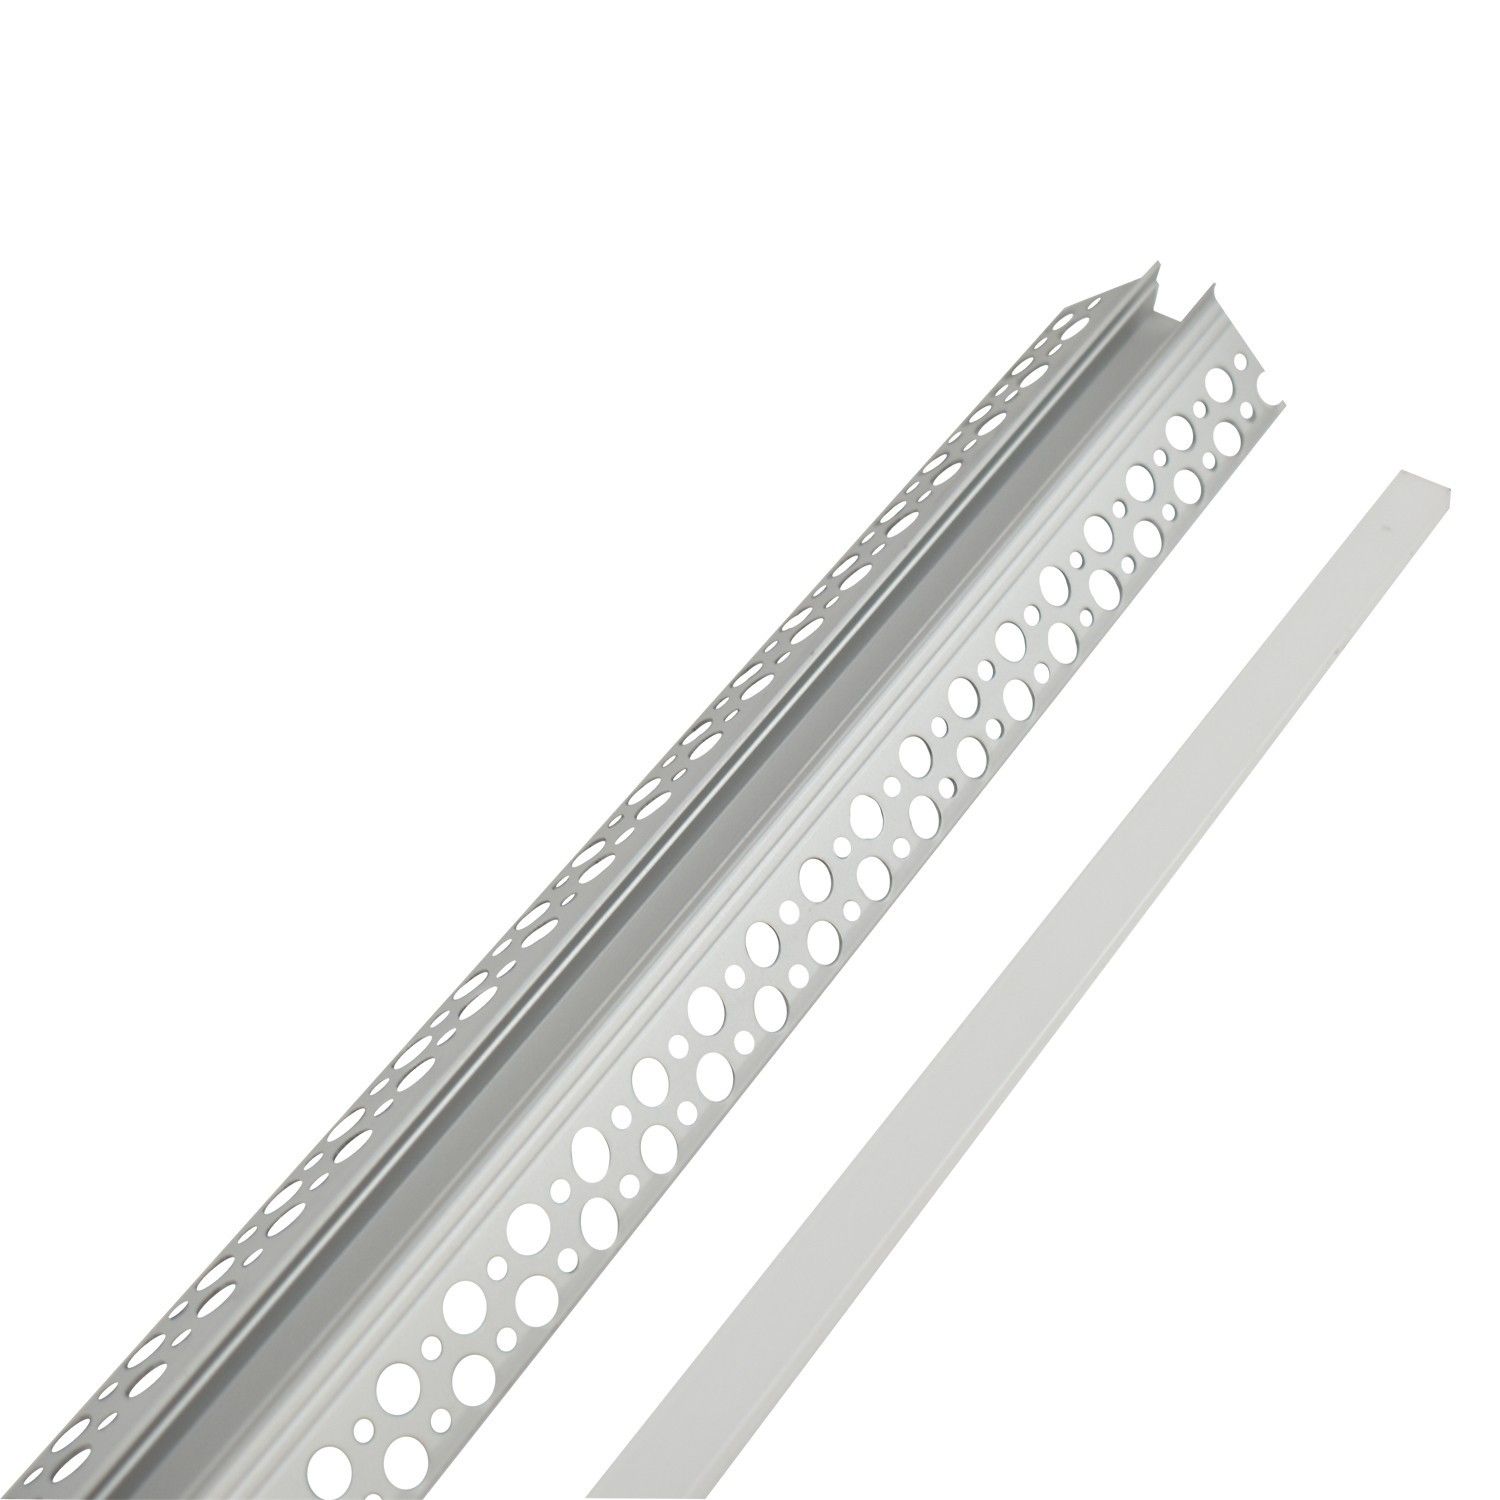 Profilé LED strip 1 ou 2 mètres - Diffuseur transparent ou opaque -  ®